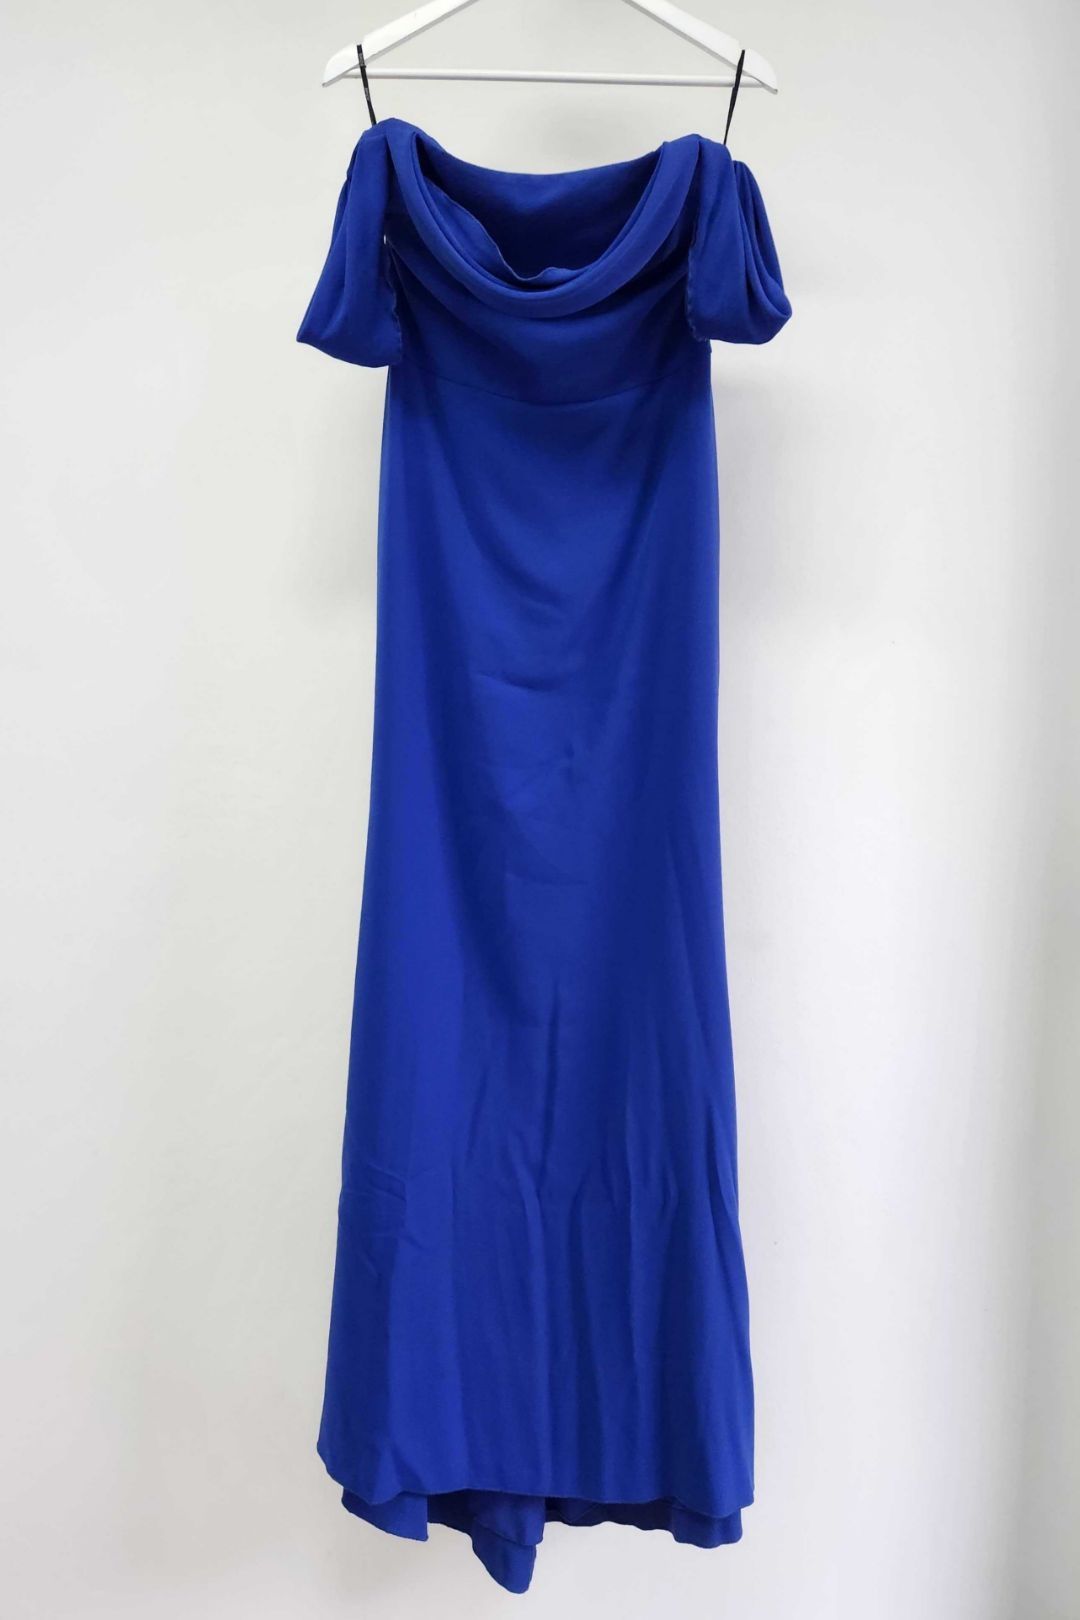 Vera Wang Bride - Andree Draped Silk Blue Dress